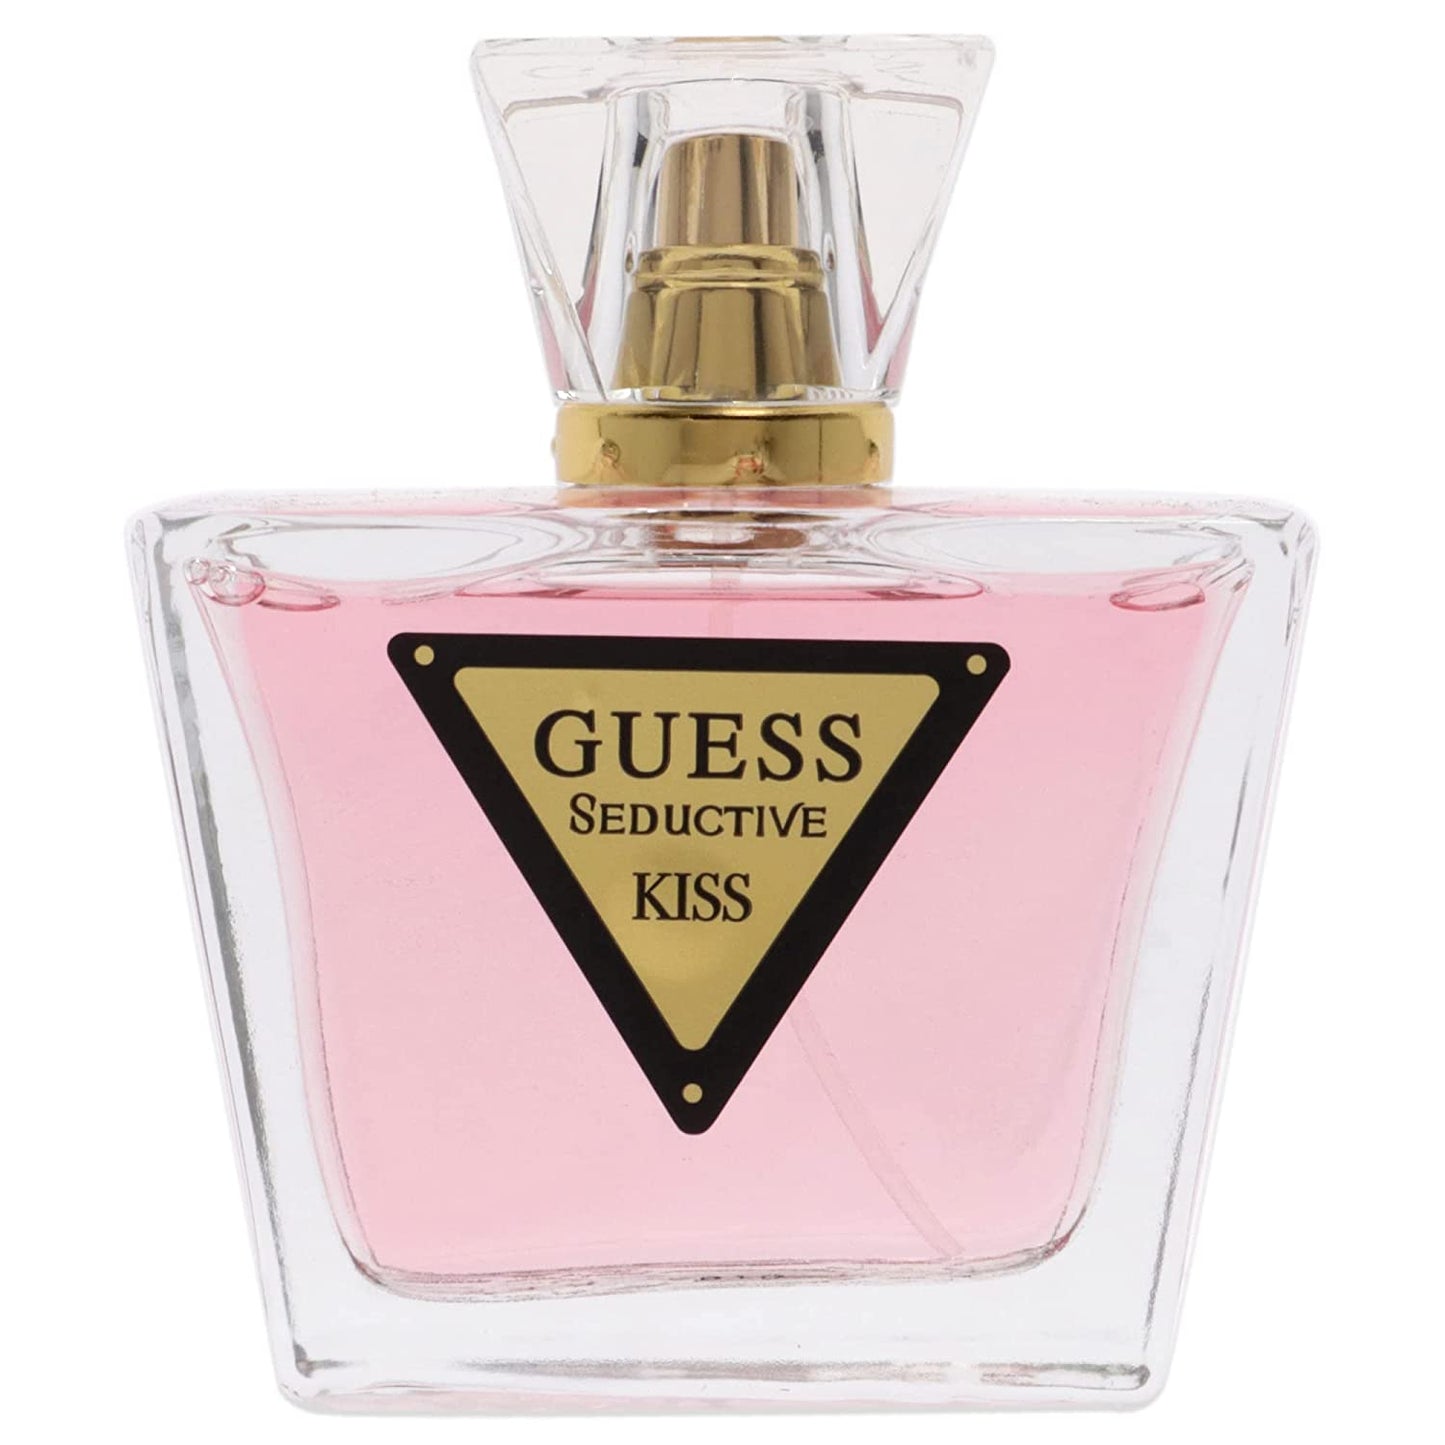 Guess Seductive Kiss para Mujer - Guess - 75 ml - EDT